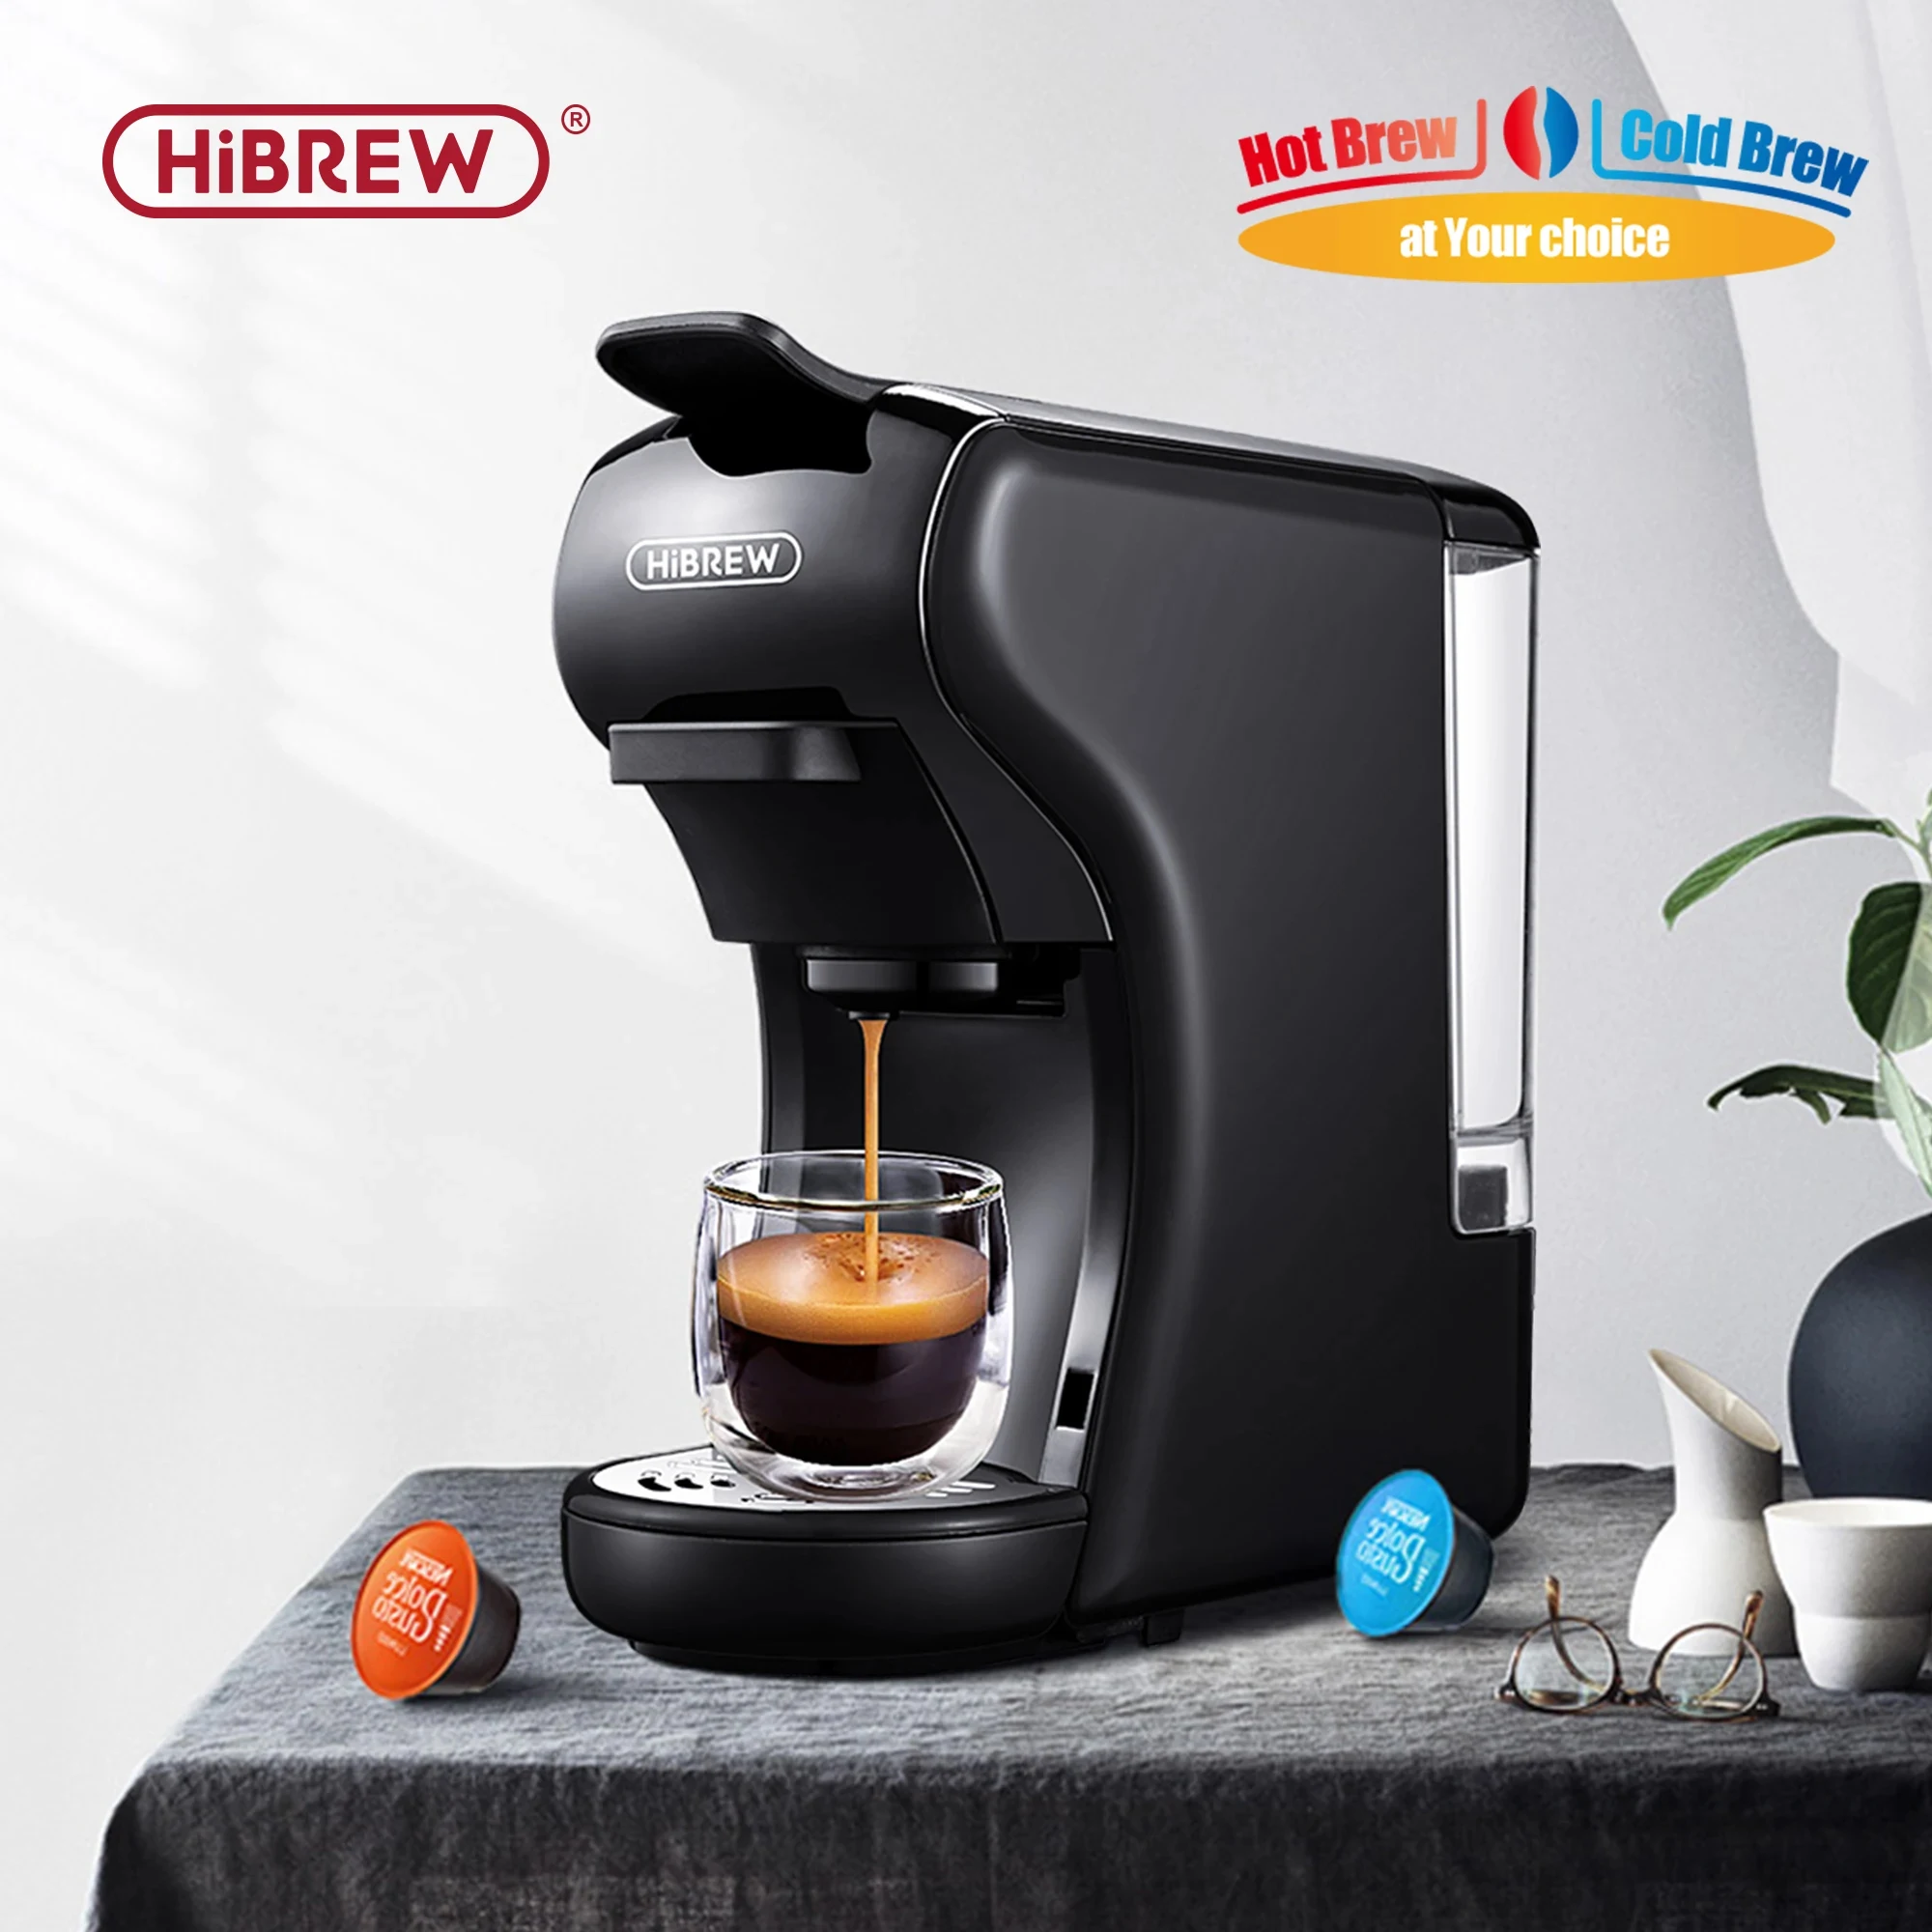 HiBREW 4 인 1 멀티 캡슐 에스프레소 커피 머신, 핫 앤 콜드 커피 머신, 19 바, 카페테라 포드 커피 메이커, 돌체 밀크 넥스프레소 파우더, H1A